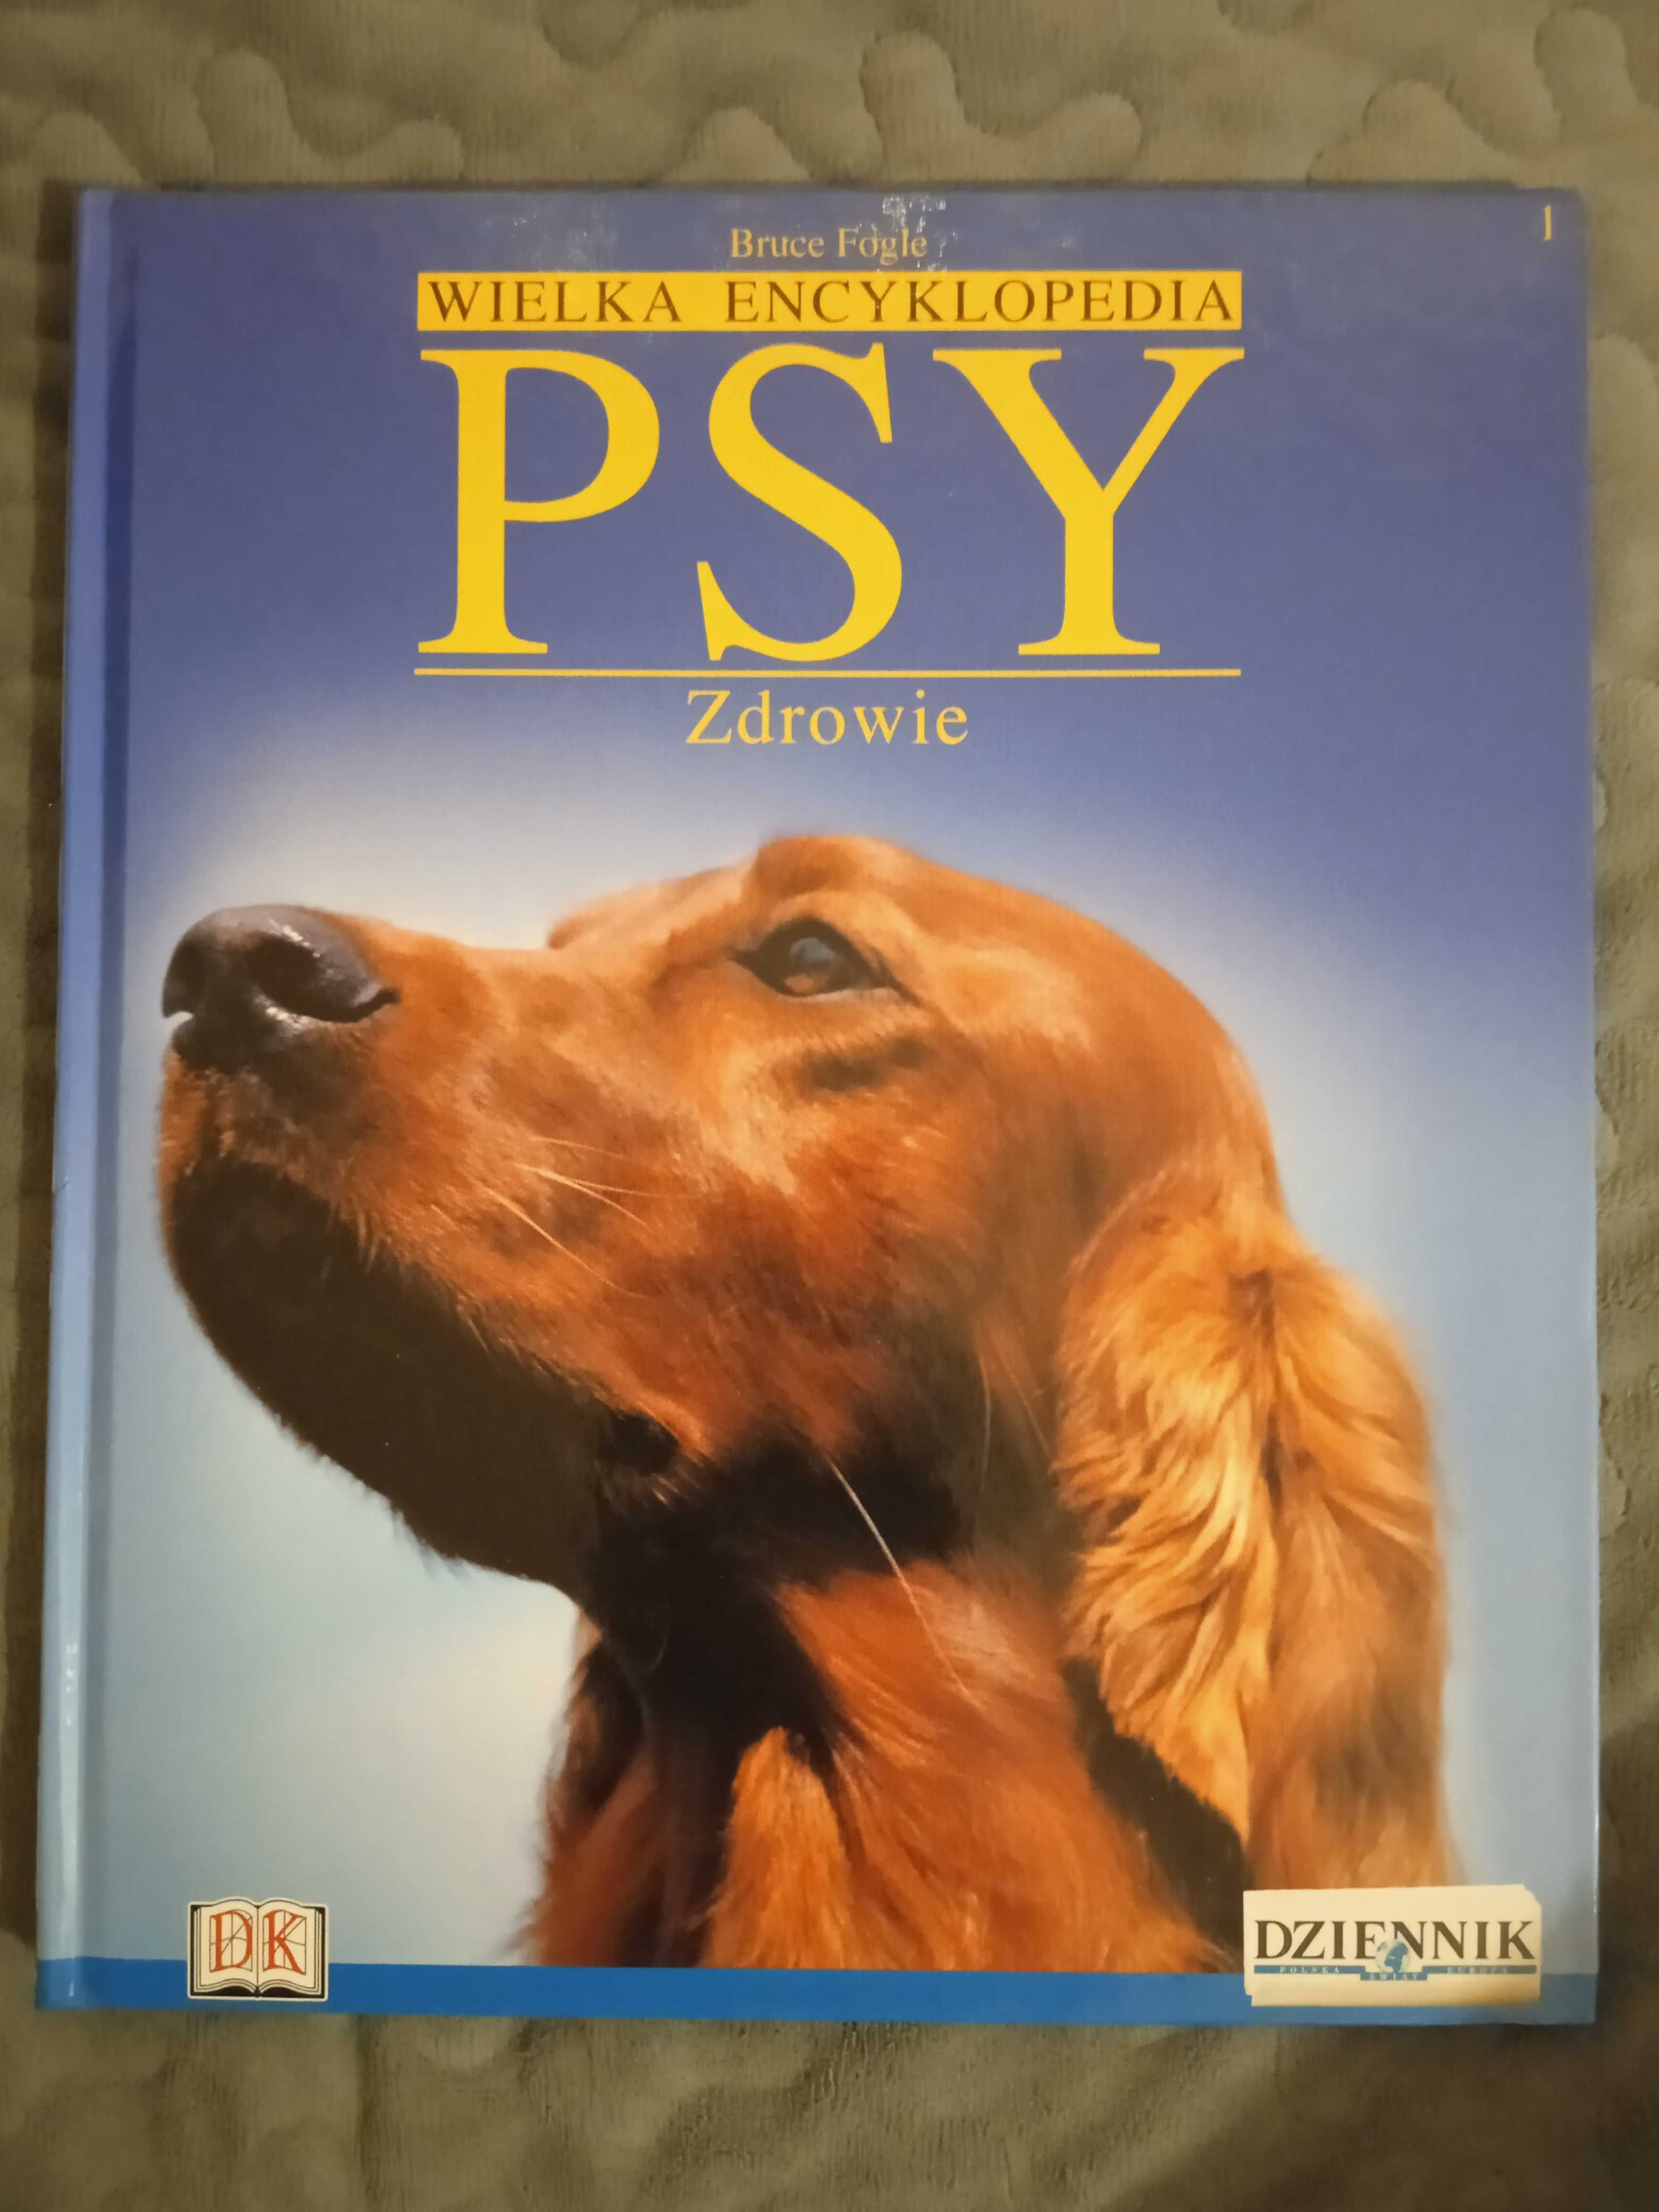 Wielka encyklopedia Psy 1 Zdrowie Bruce Fogle